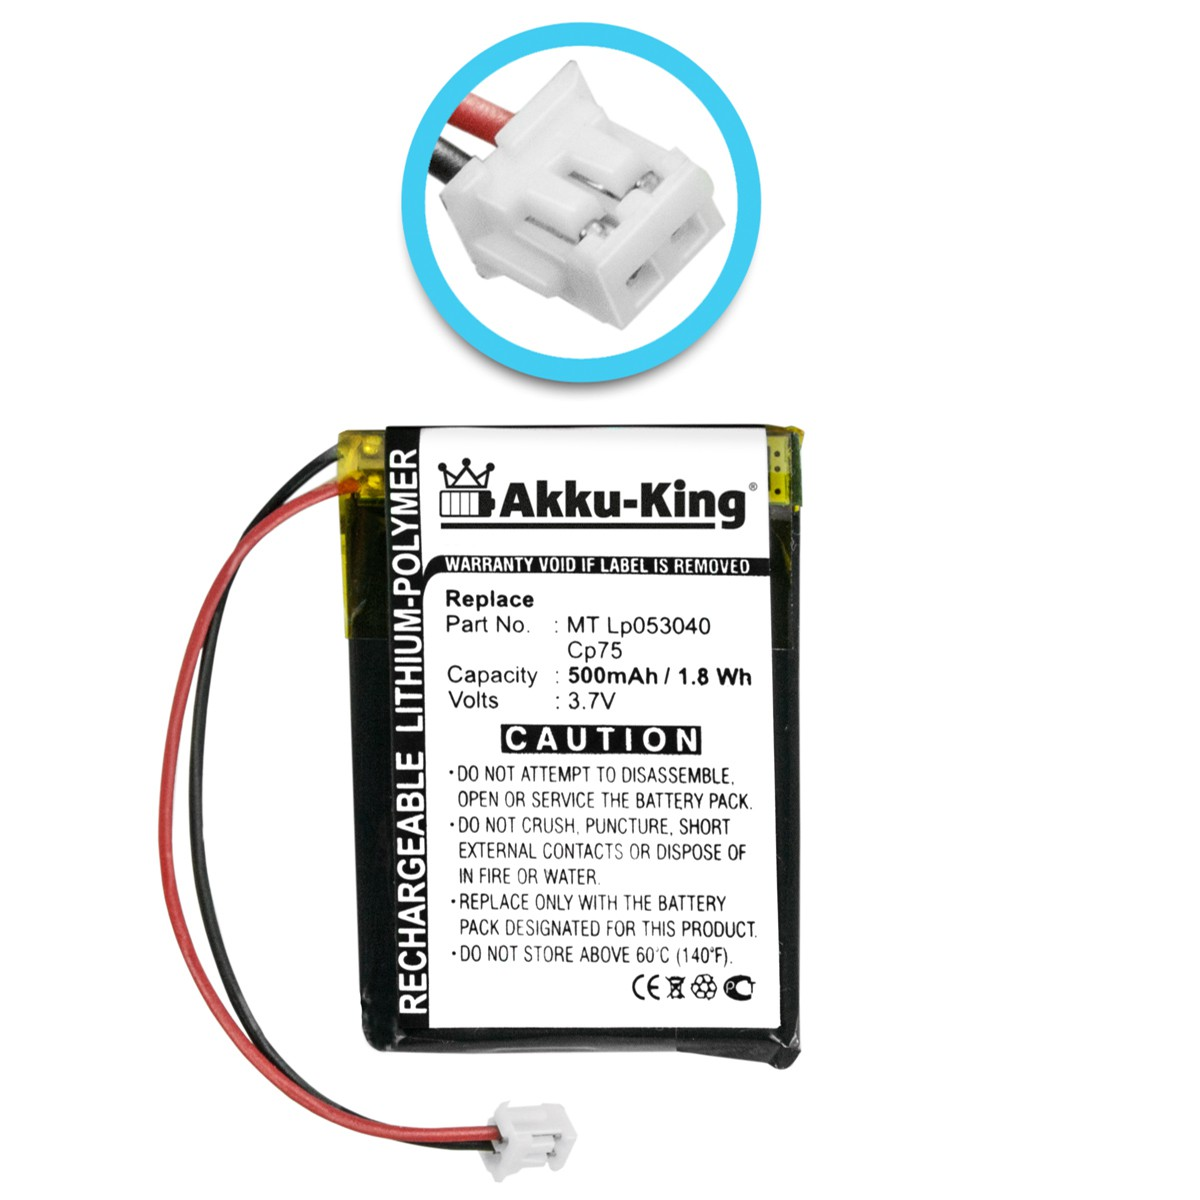 AKKU-KING Akku 3.7 LP053040 Geräte-Akku, 500mAh kompatibel MT Li-Polymer Volt, iDect mit